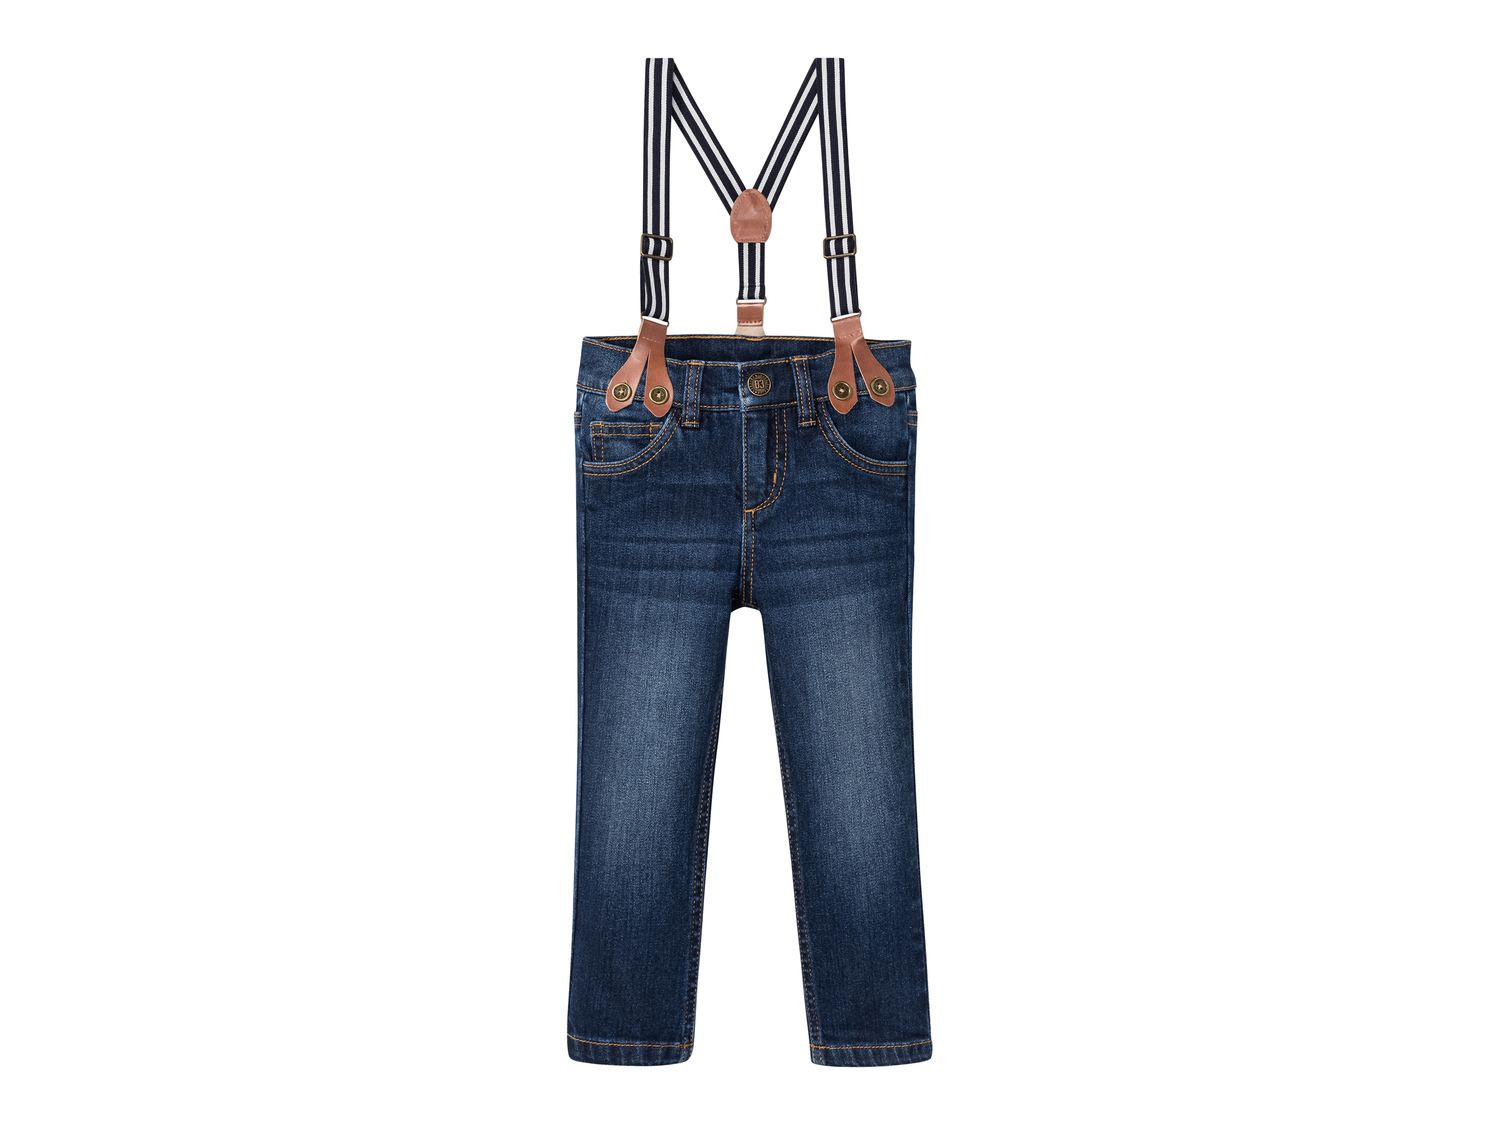 Jeans da bambino con bretelle Lupilu, prezzo 8.99 &#8364; 
Misure: 1-6 anni
Taglie ...